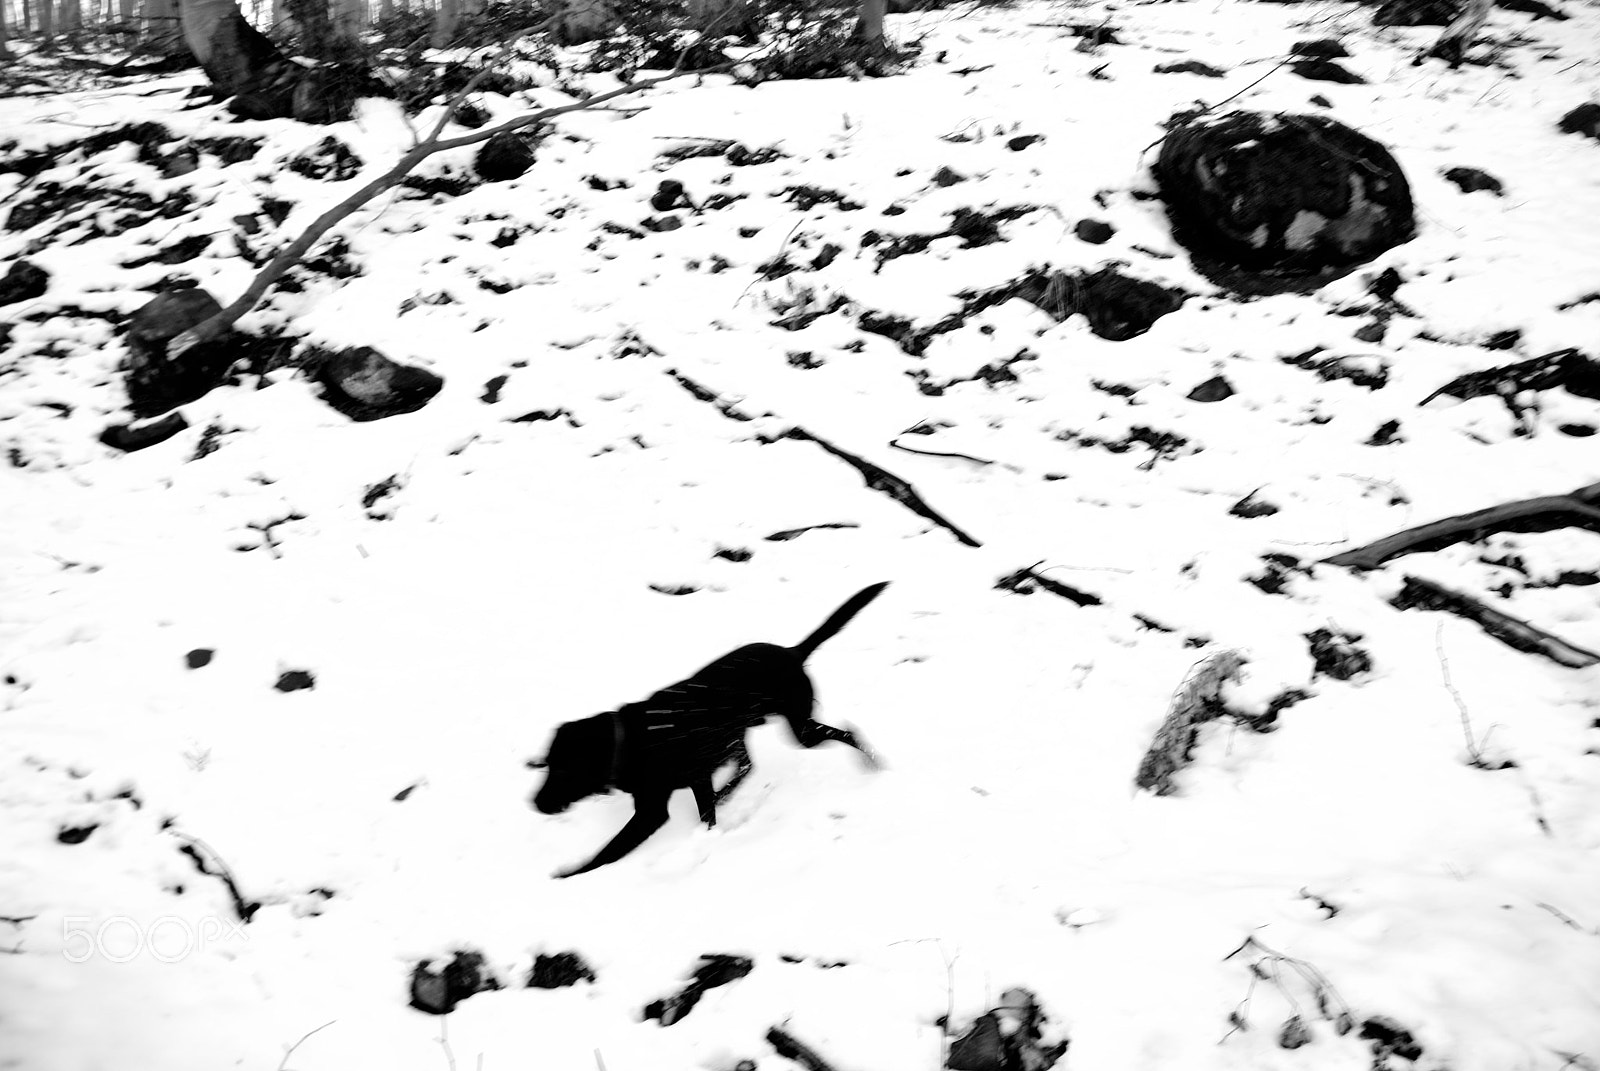 Nikon D80 + Nikon AF-S DX Nikkor 18-105mm F3.5-5.6G ED VR sample photo. Black dog across the snow photography